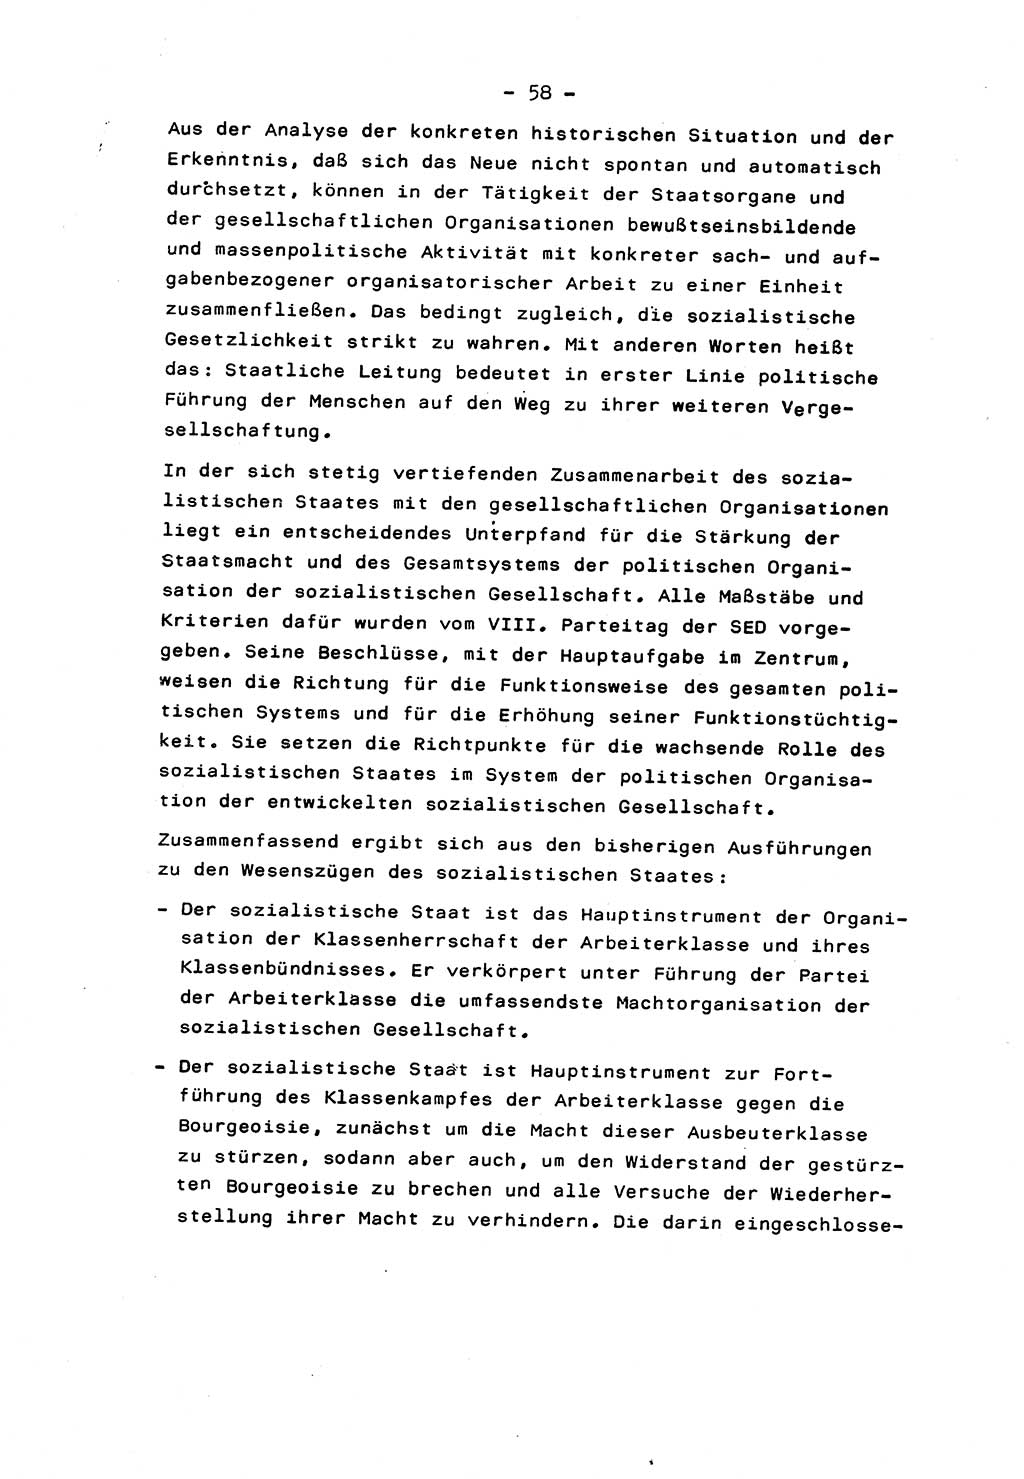 Marxistisch-leninistische Staats- und Rechtstheorie [Deutsche Demokratische Republik (DDR)] 1975, Seite 58 (ML St.-R.-Th. DDR 1975, S. 58)